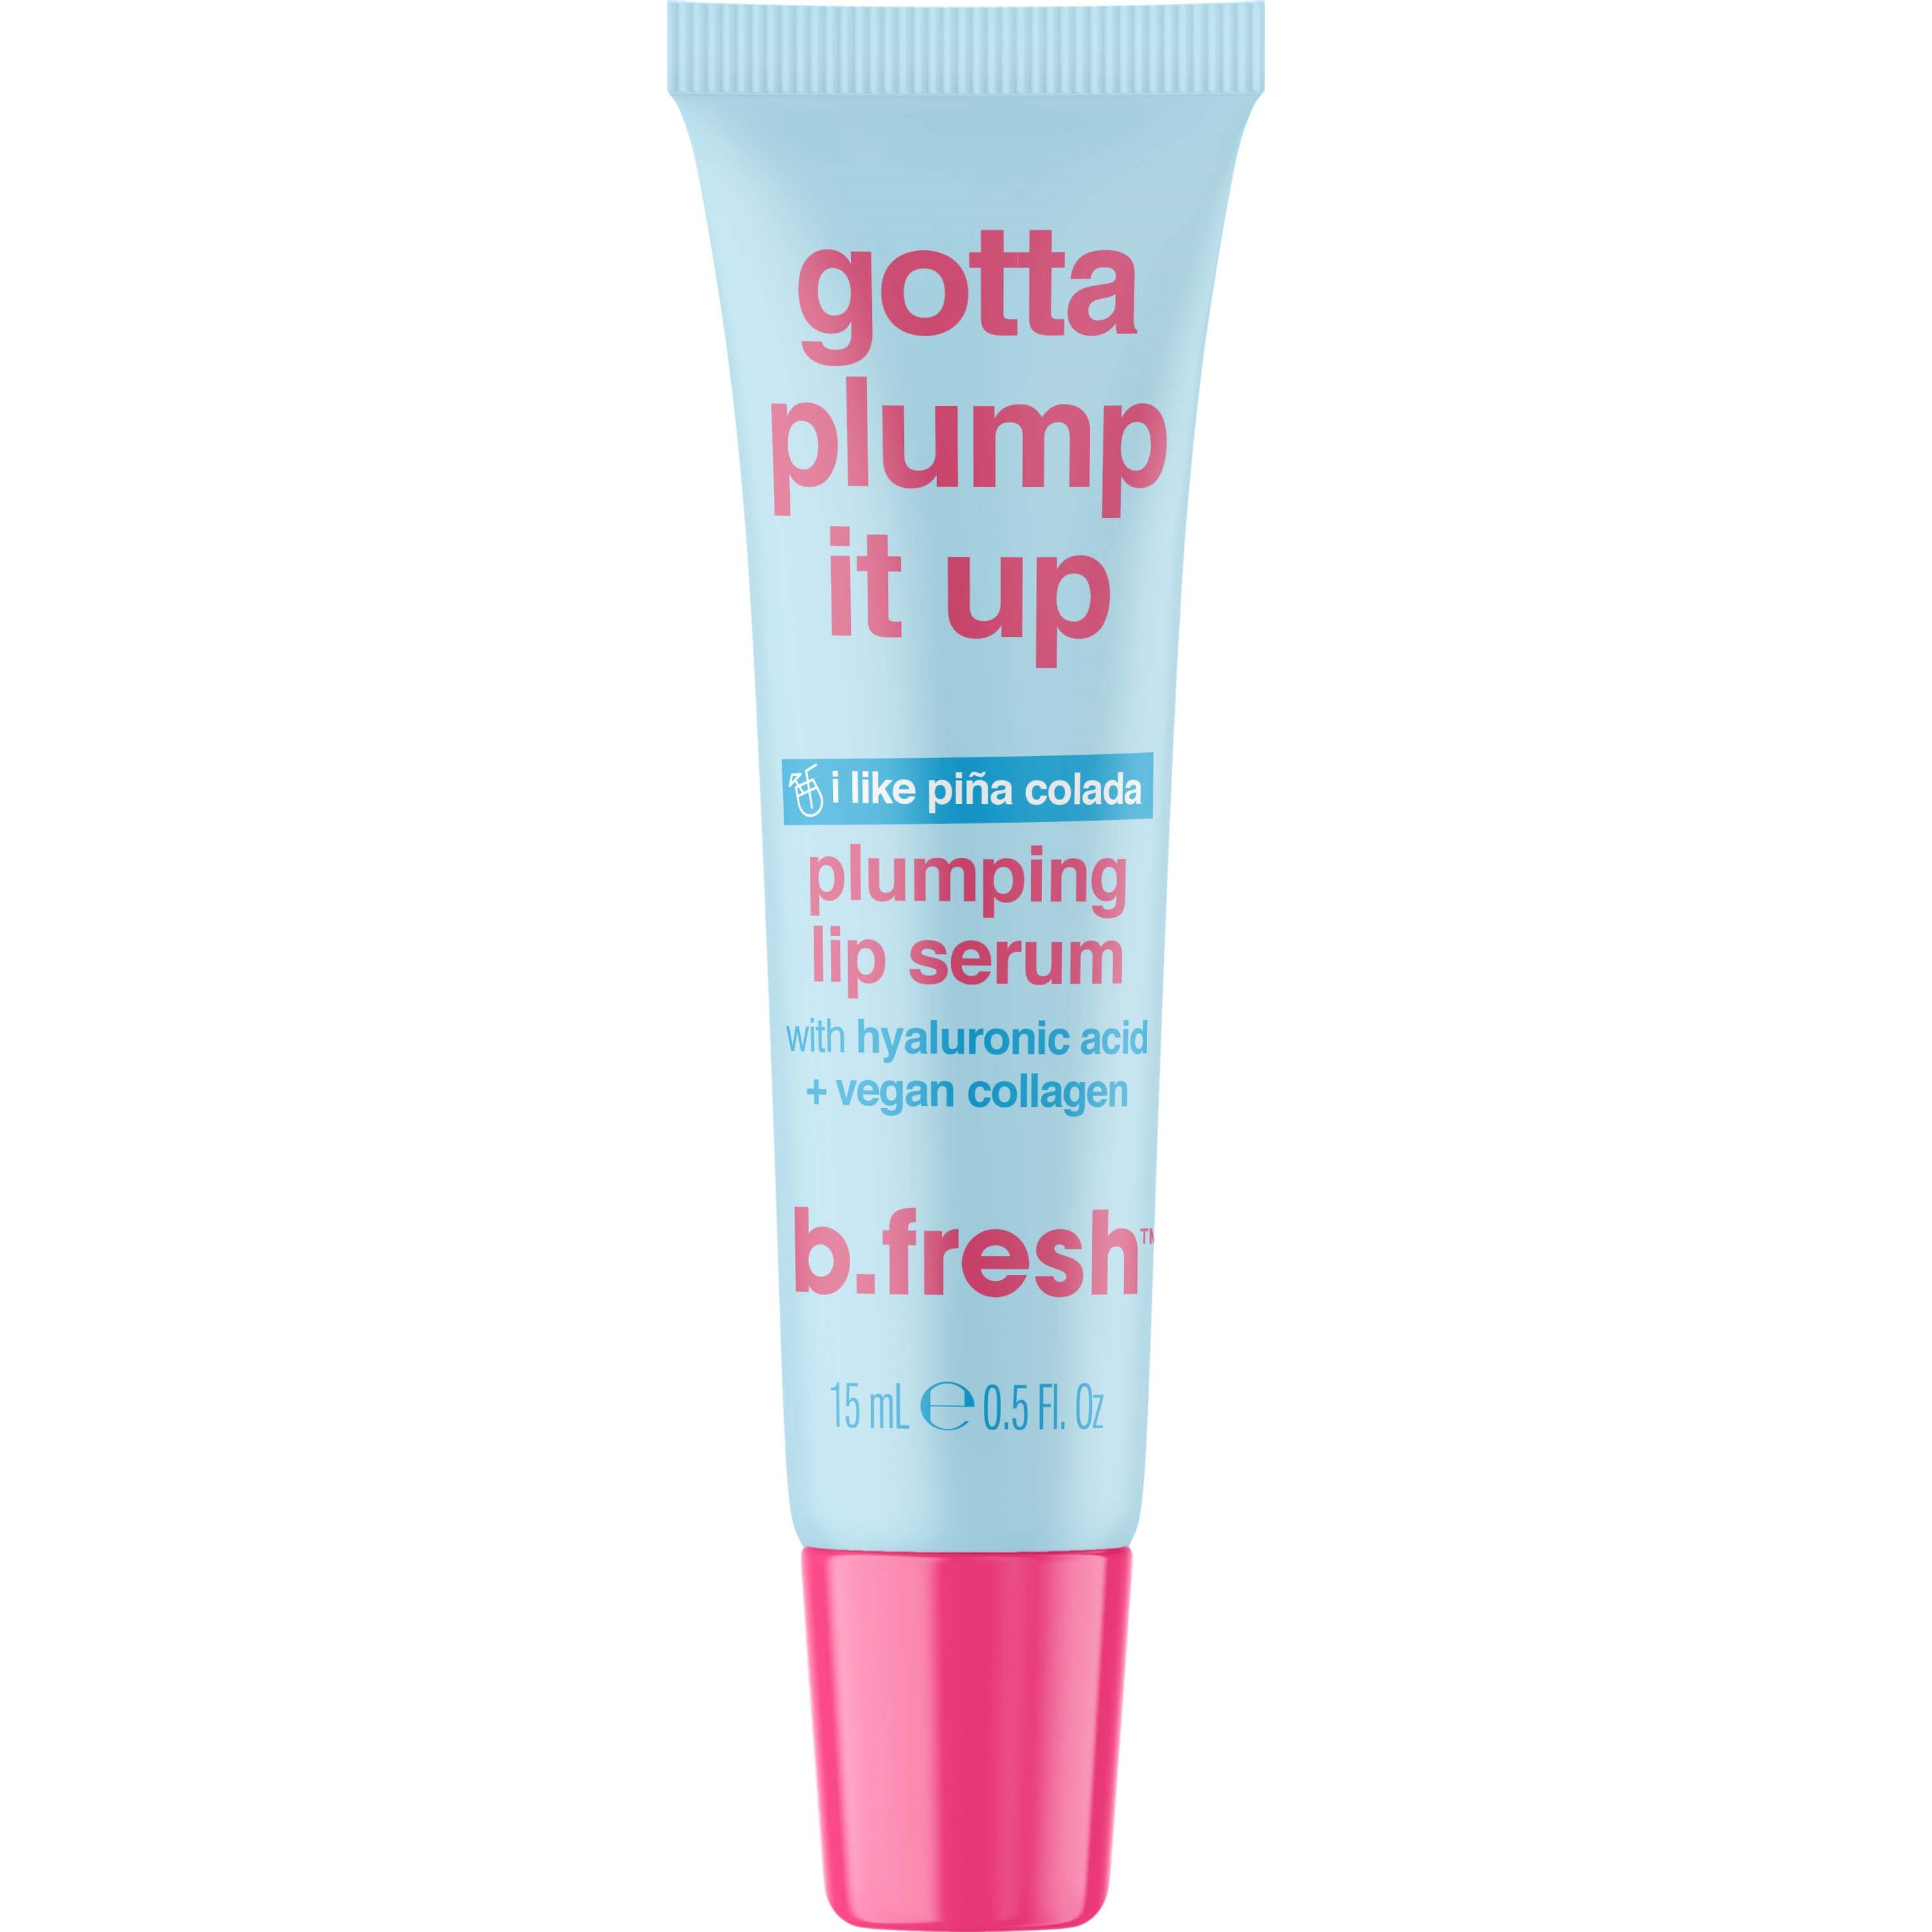 b.fresh Gotta plump it up lip serum 15 ml